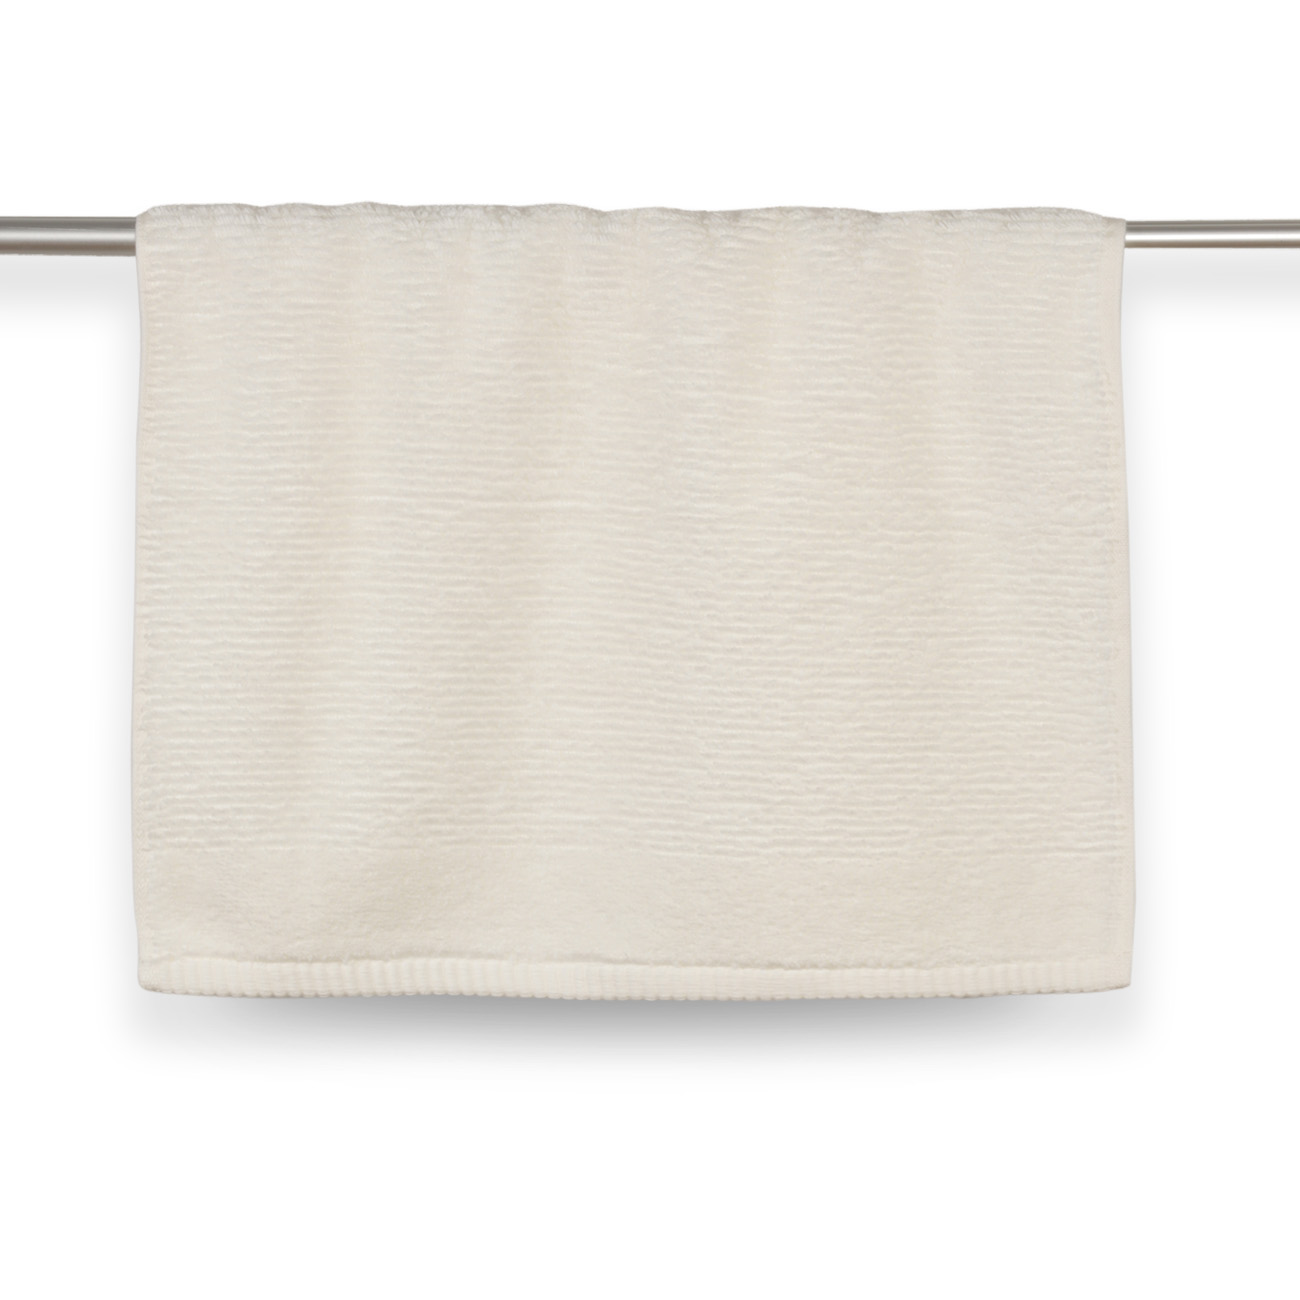 Полотенце, 40х60 см, хлопок, белое, Terry cotton изображение № 2